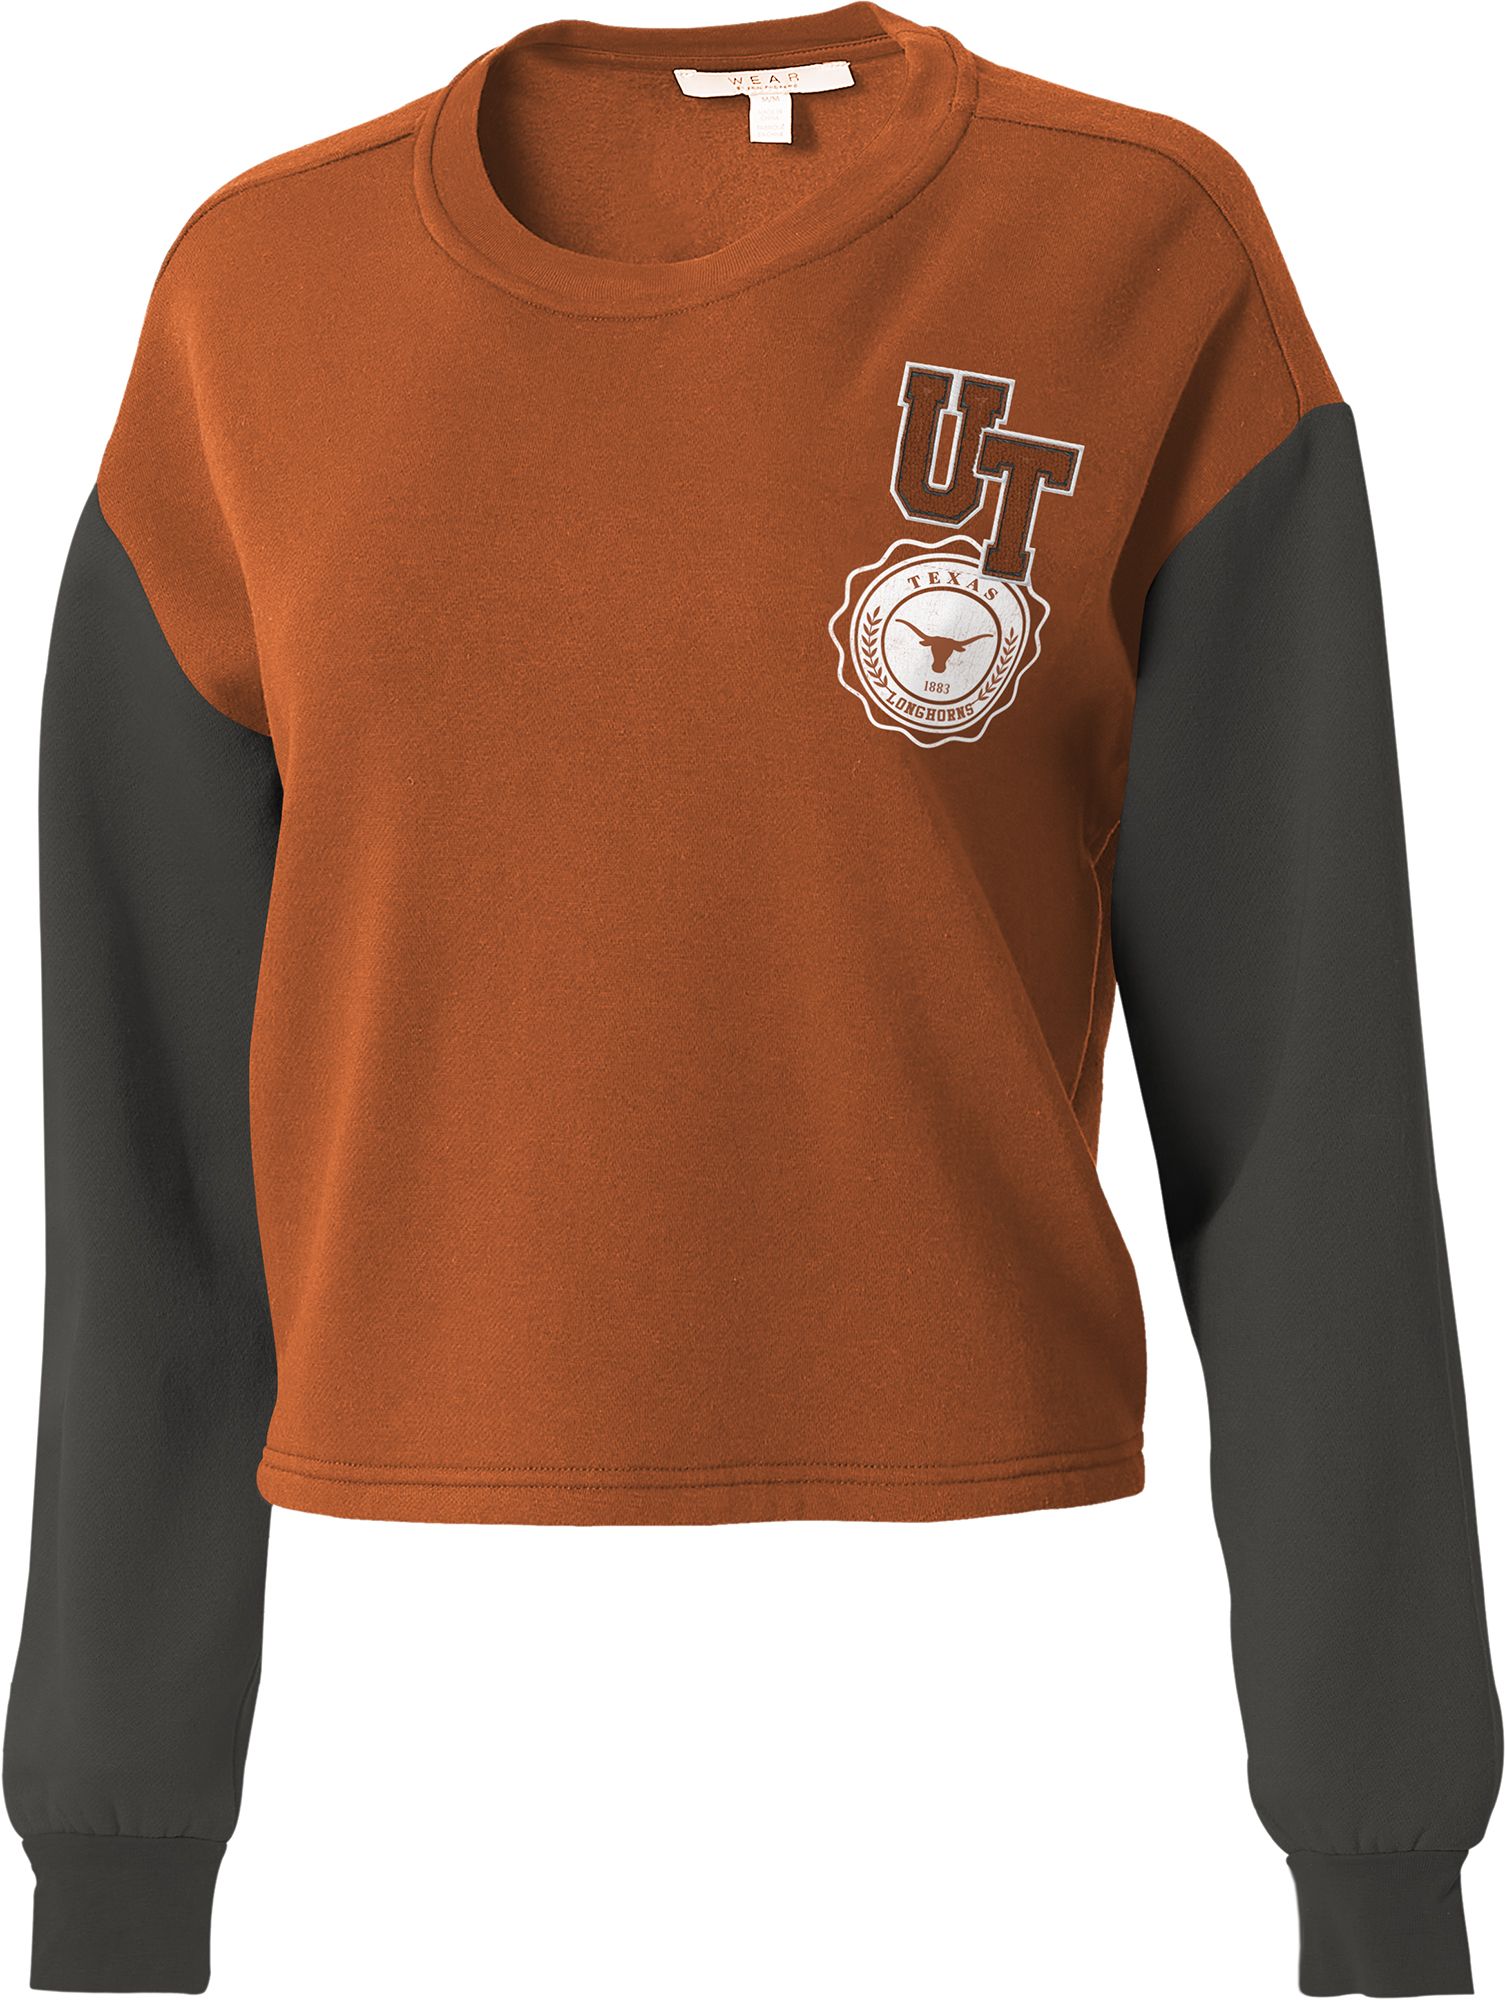 WEAR by Erin Andrews Women's Texas Longhorns Burnt Orange Colorblock Crew Neck Sweatshirt